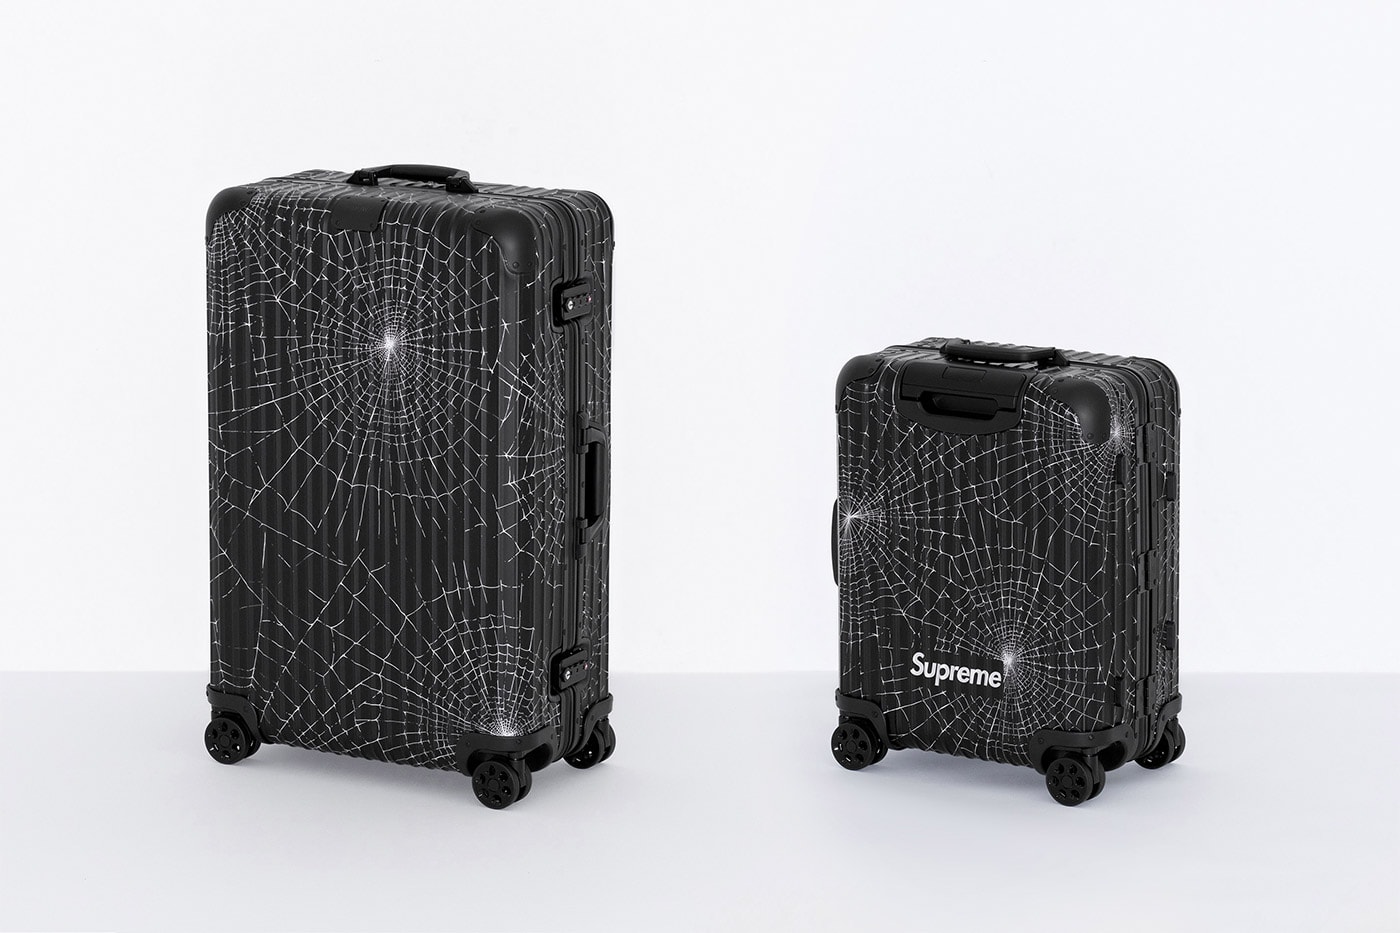 Supreme x RIMOWA Spring 2019 Custom Suitcases aluminum bodies black anodized spiderweb monogram print